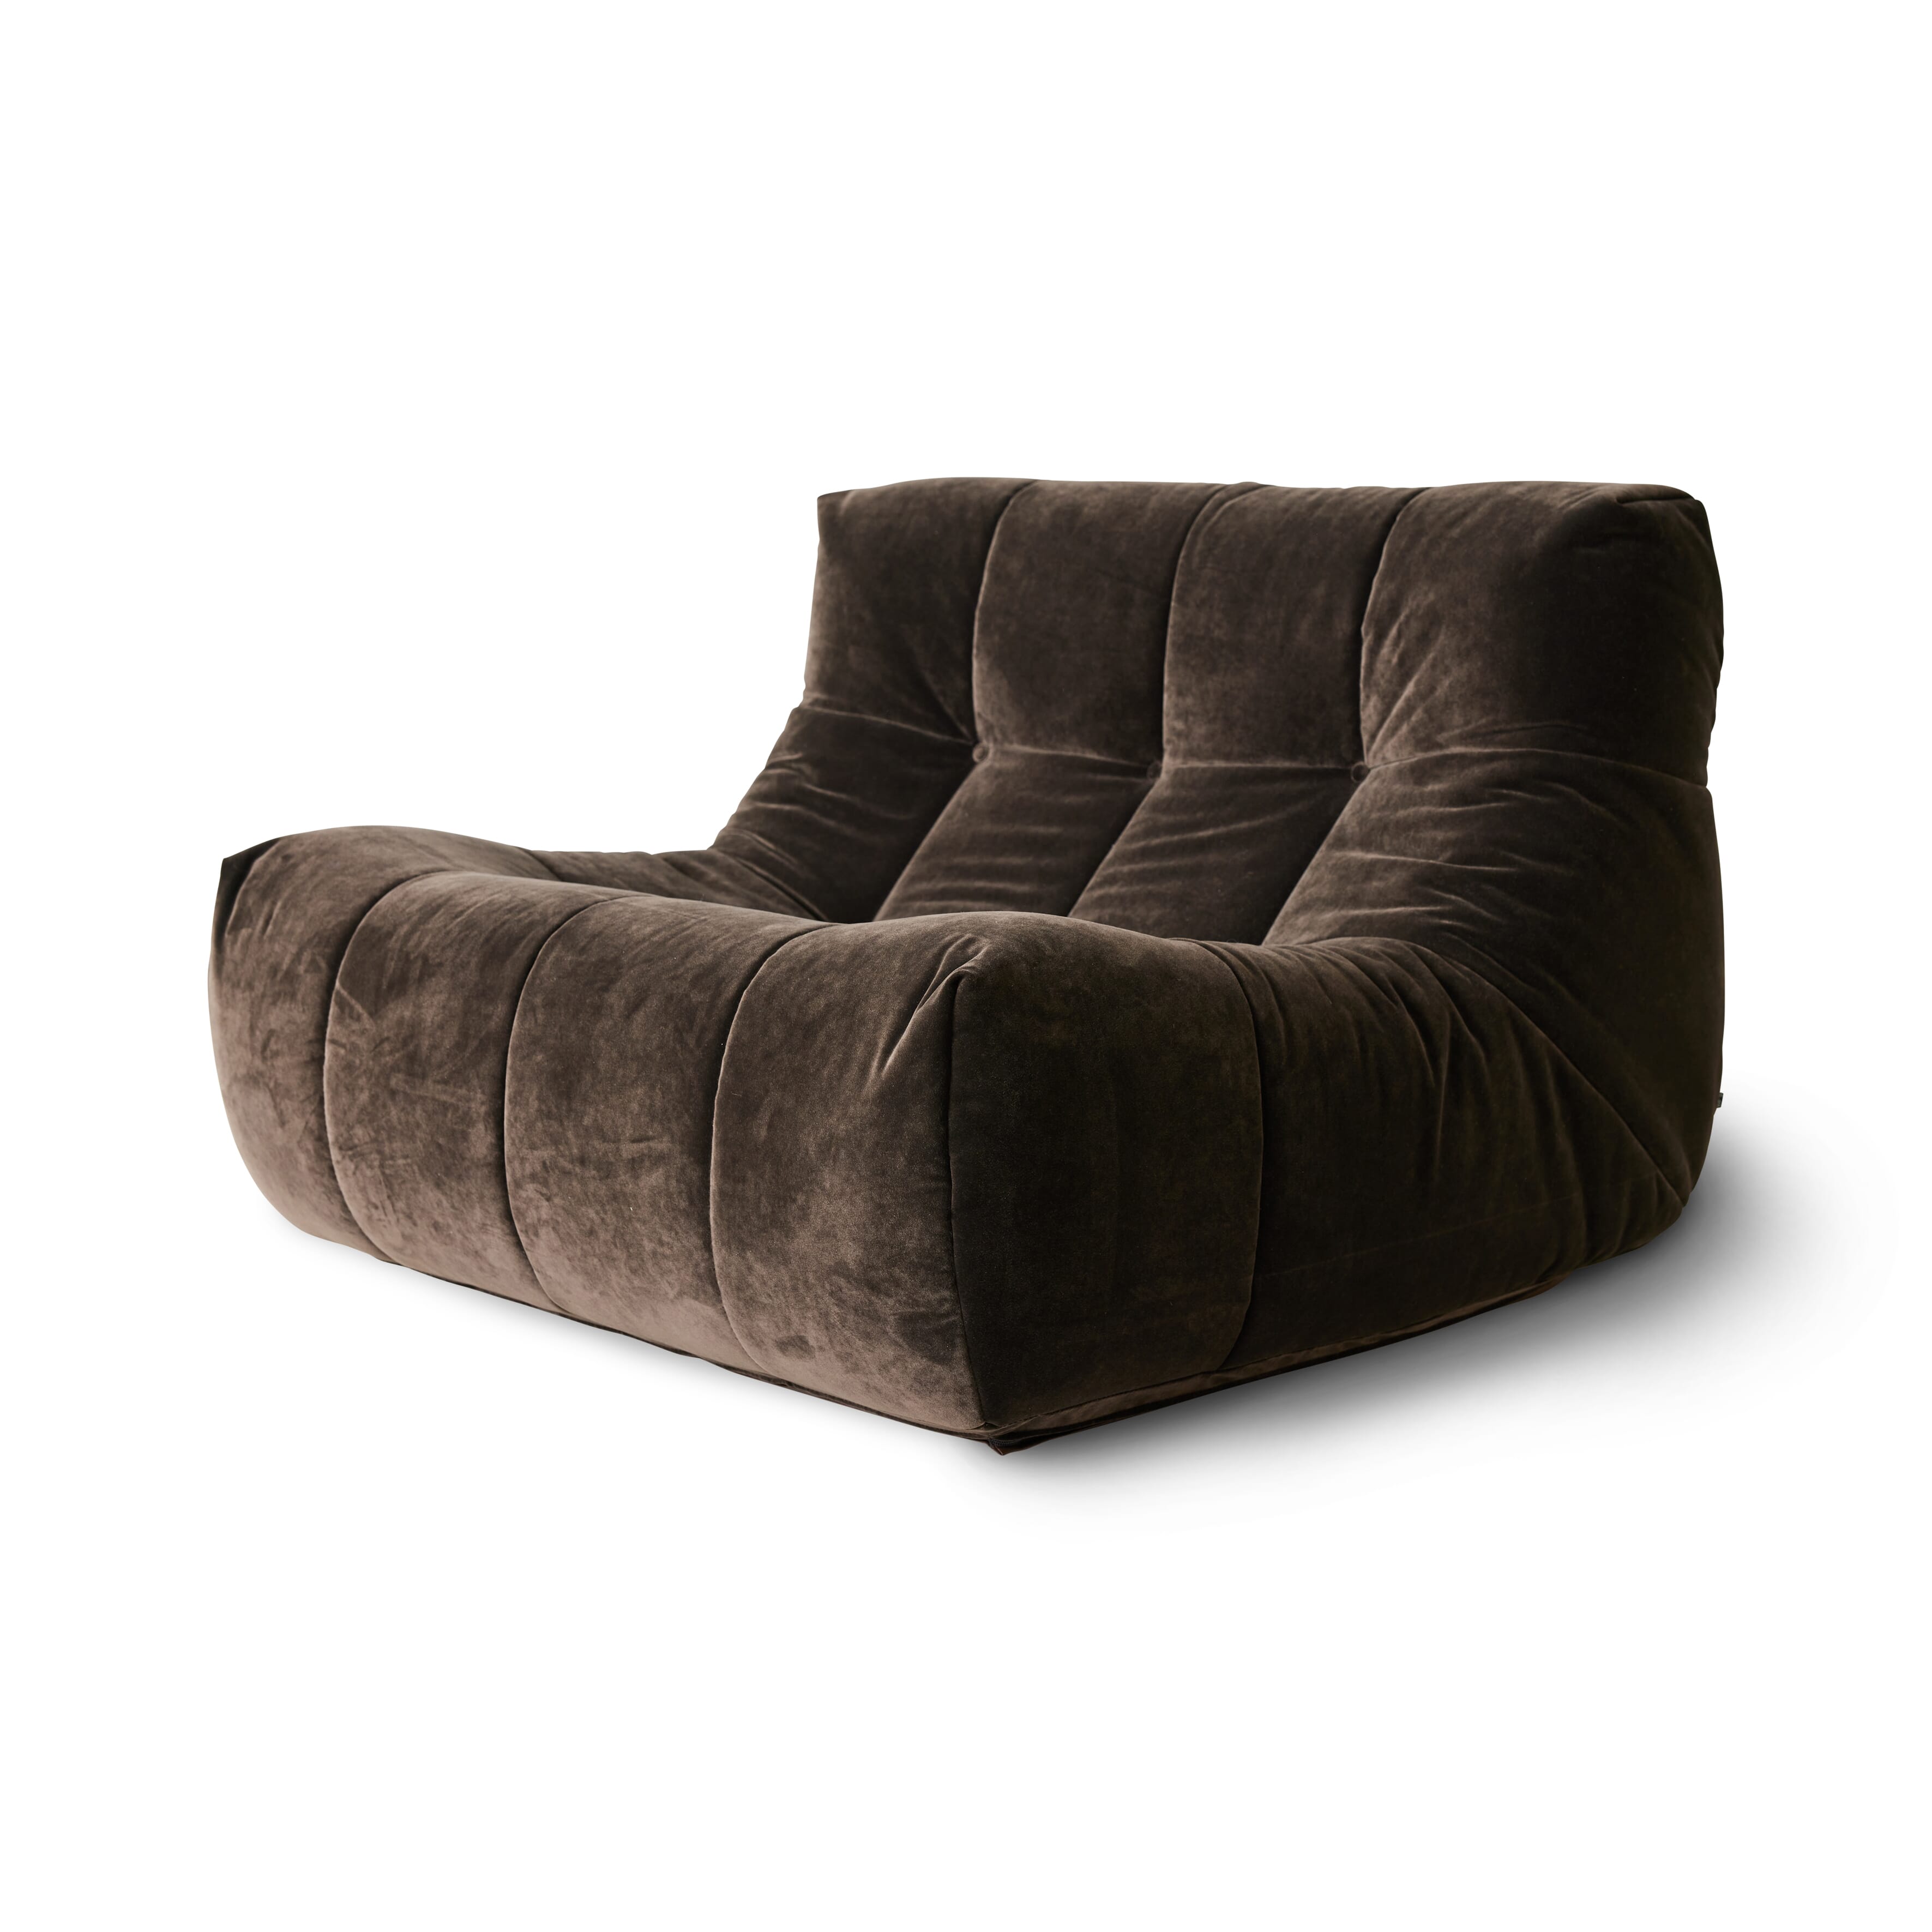 Bilde av Hk Living - Hk Living Lazy Lounge Chair Espresso - Lunehjem.no - Interiør På Nett